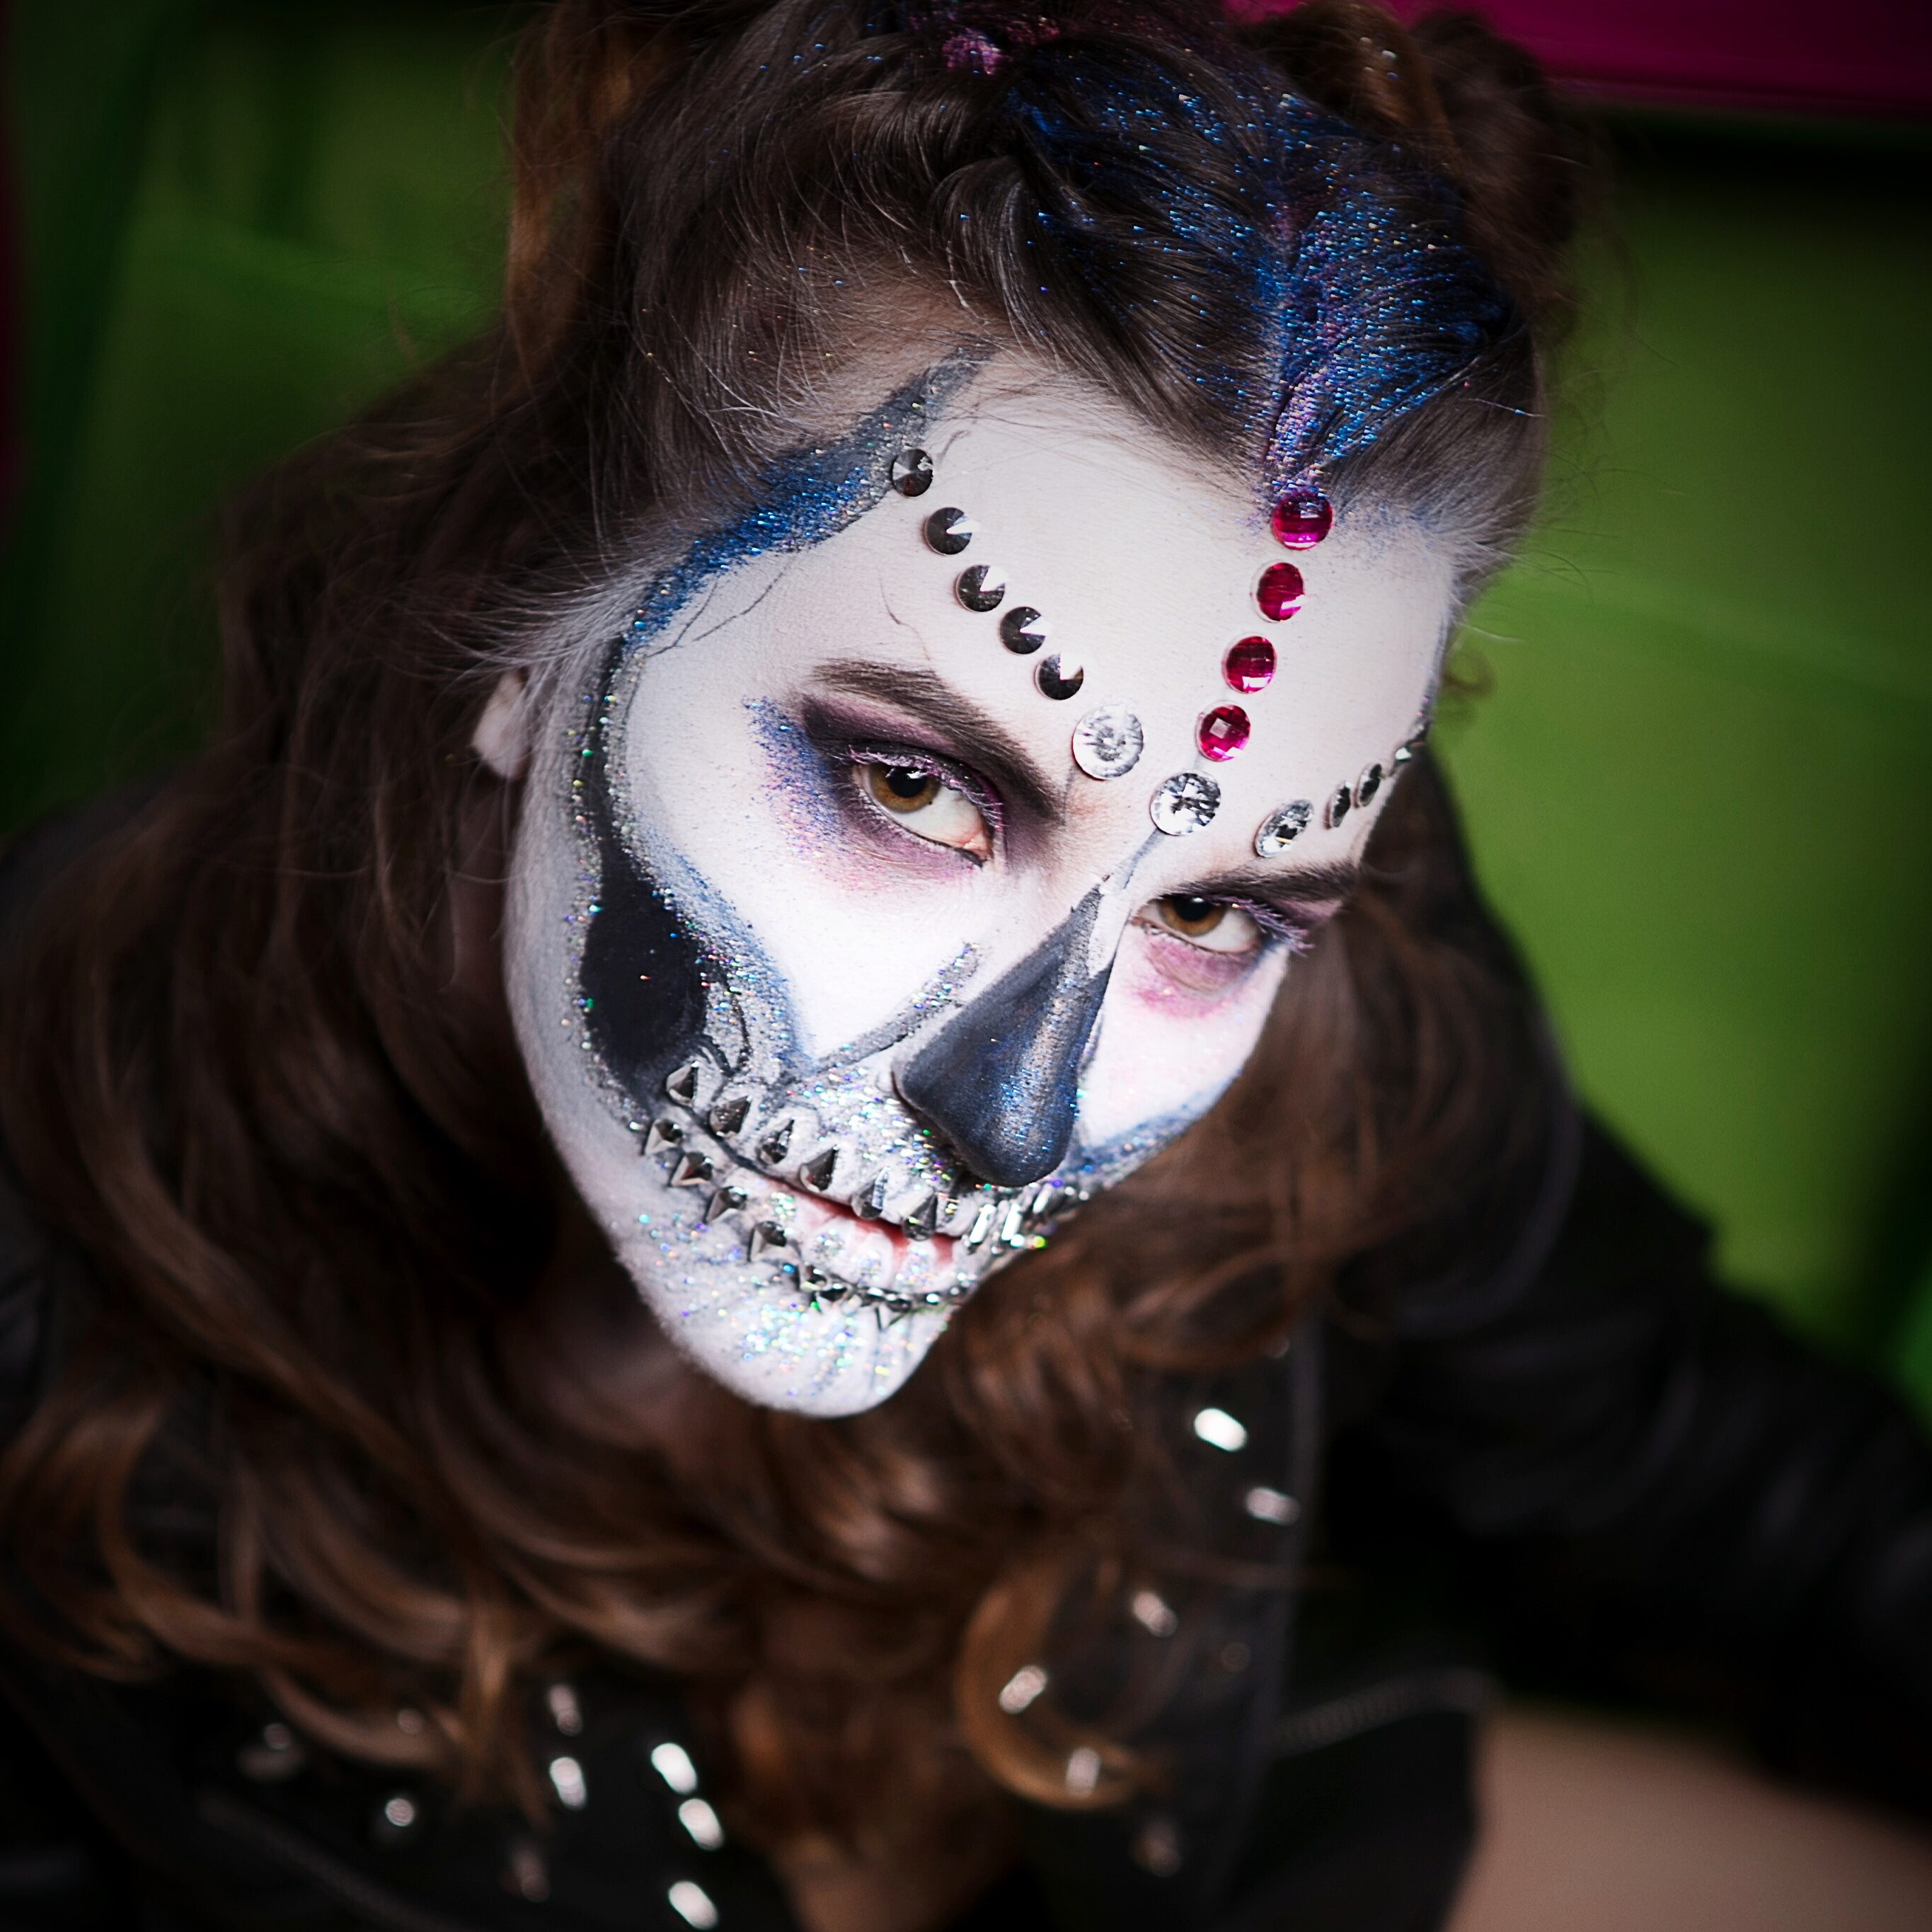 грим на хэллоуин киев, макияж на хеллоуин киев, аквагрим на хэллоуин киев, Сахарный череп, sugar skull kiev,